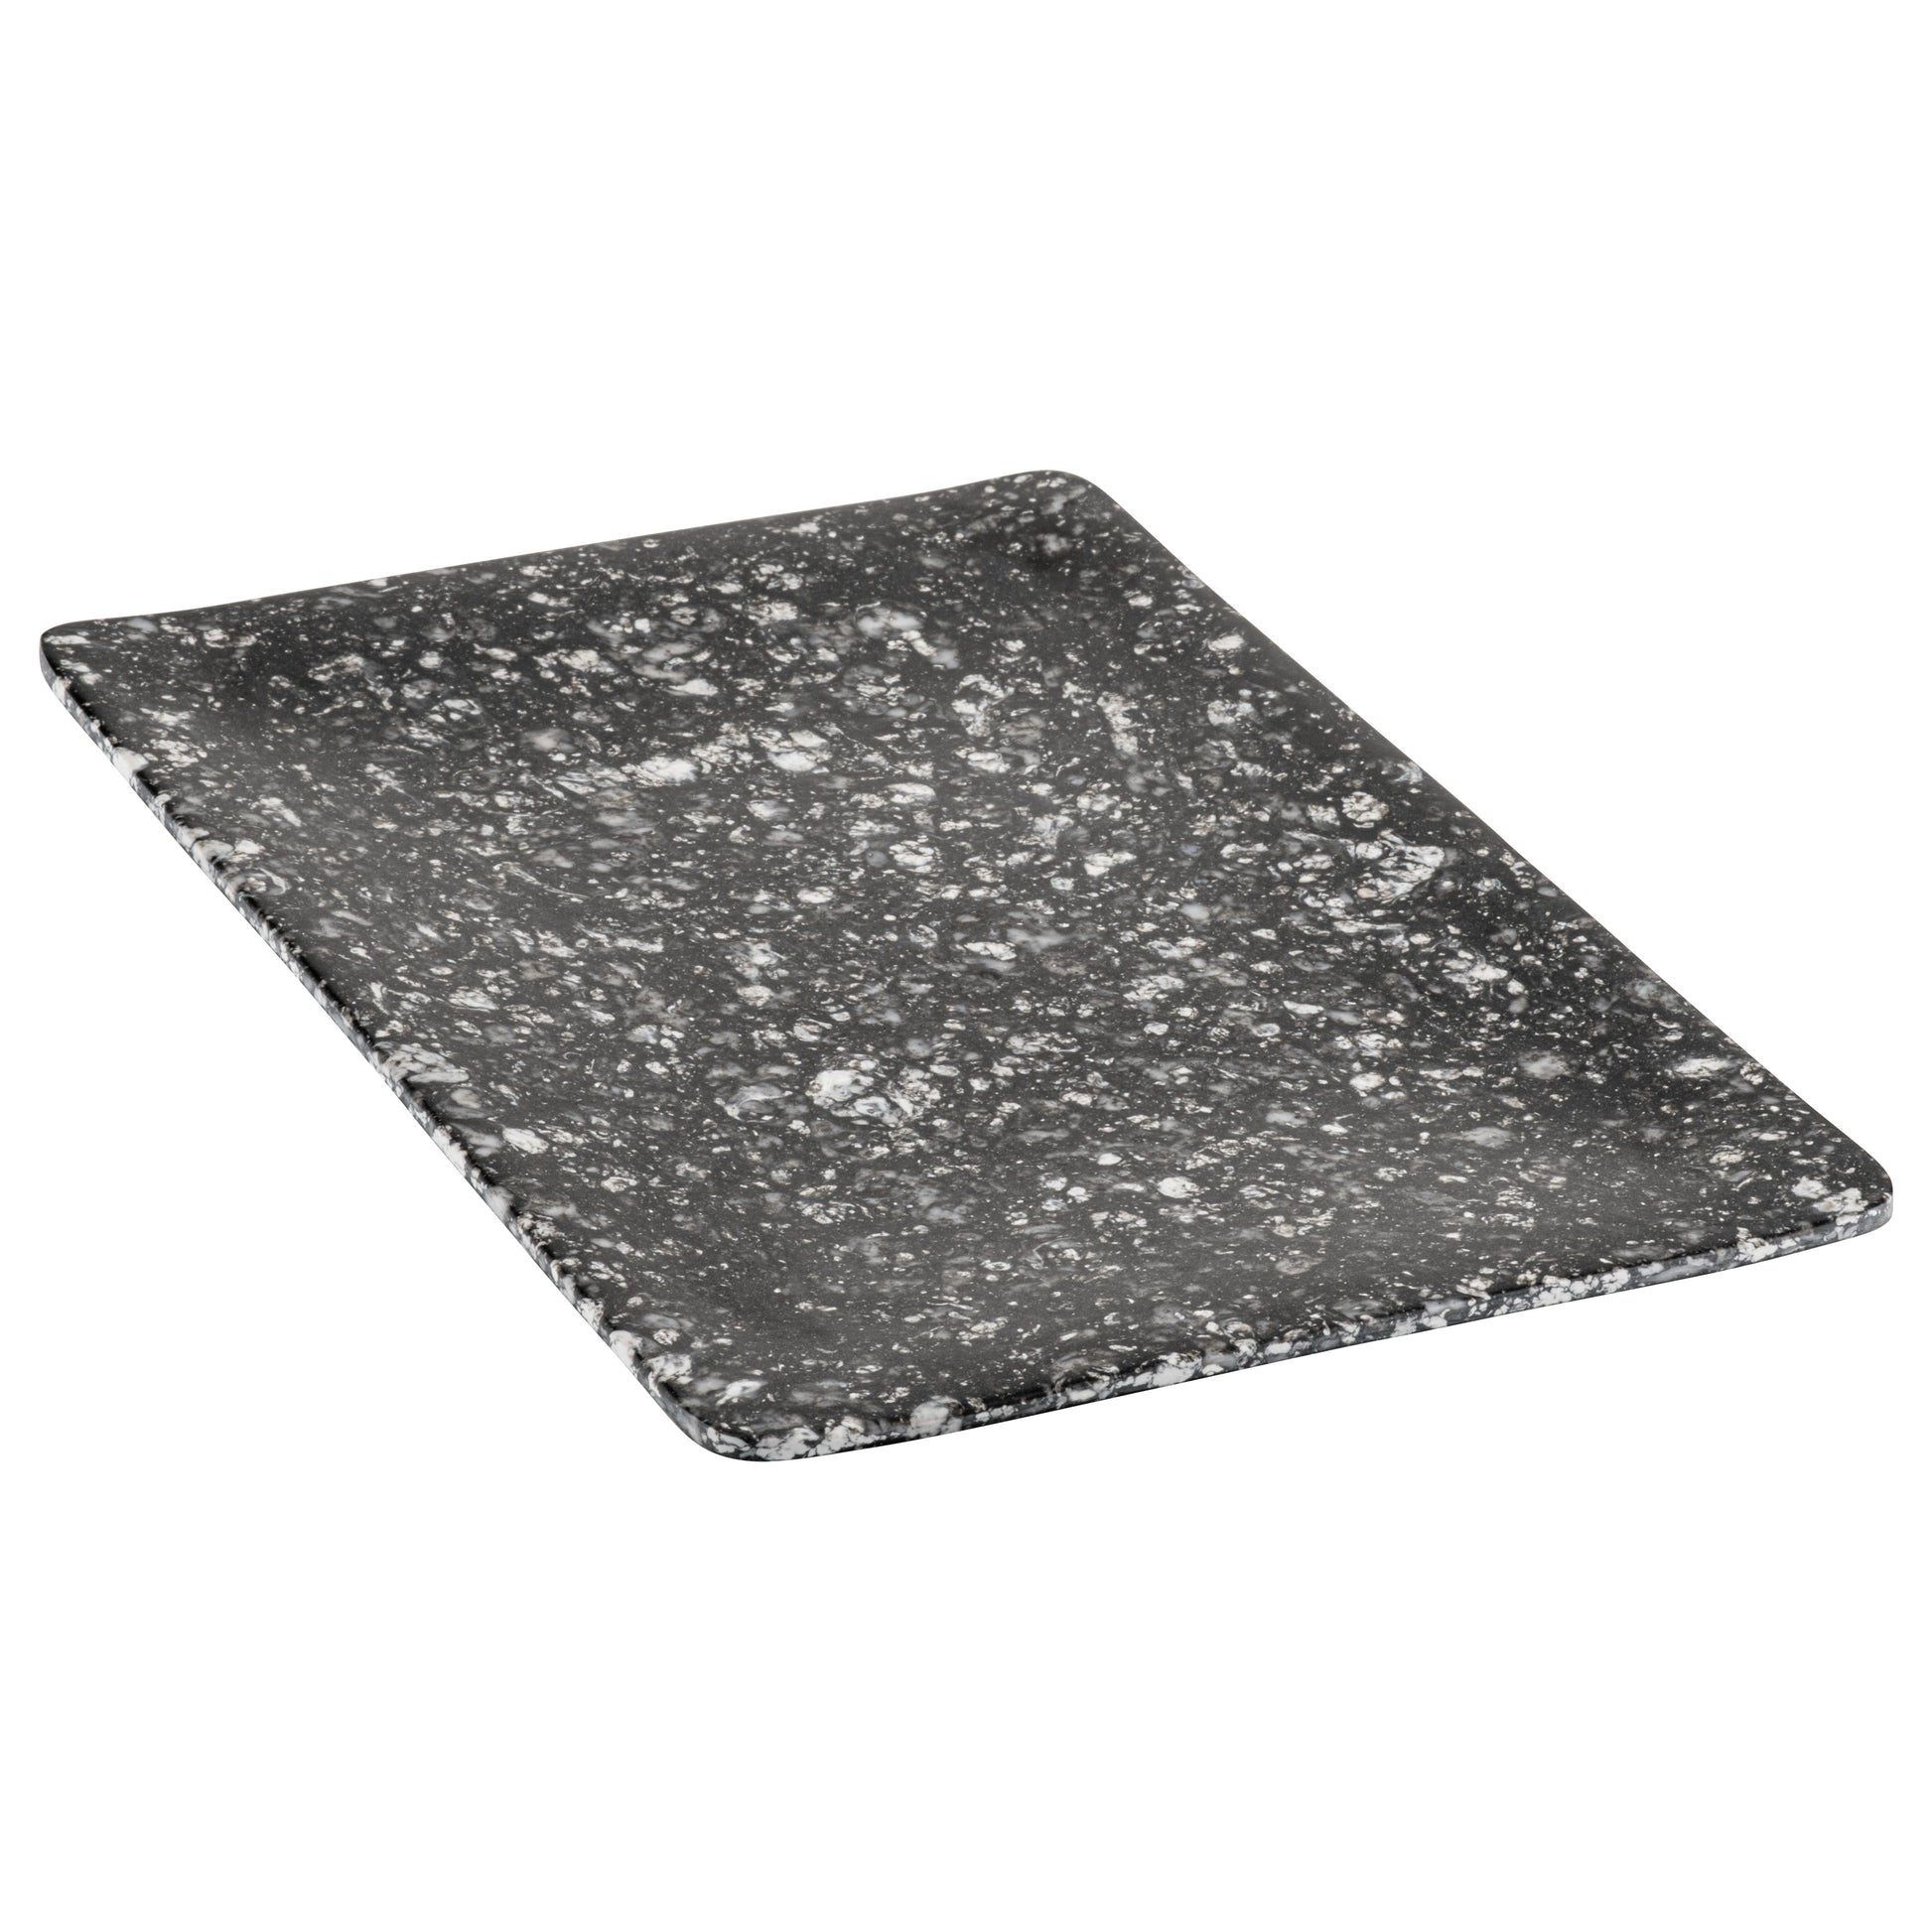 Graniet melamine plateau met saprand, maat L (53x19.5x1,7)